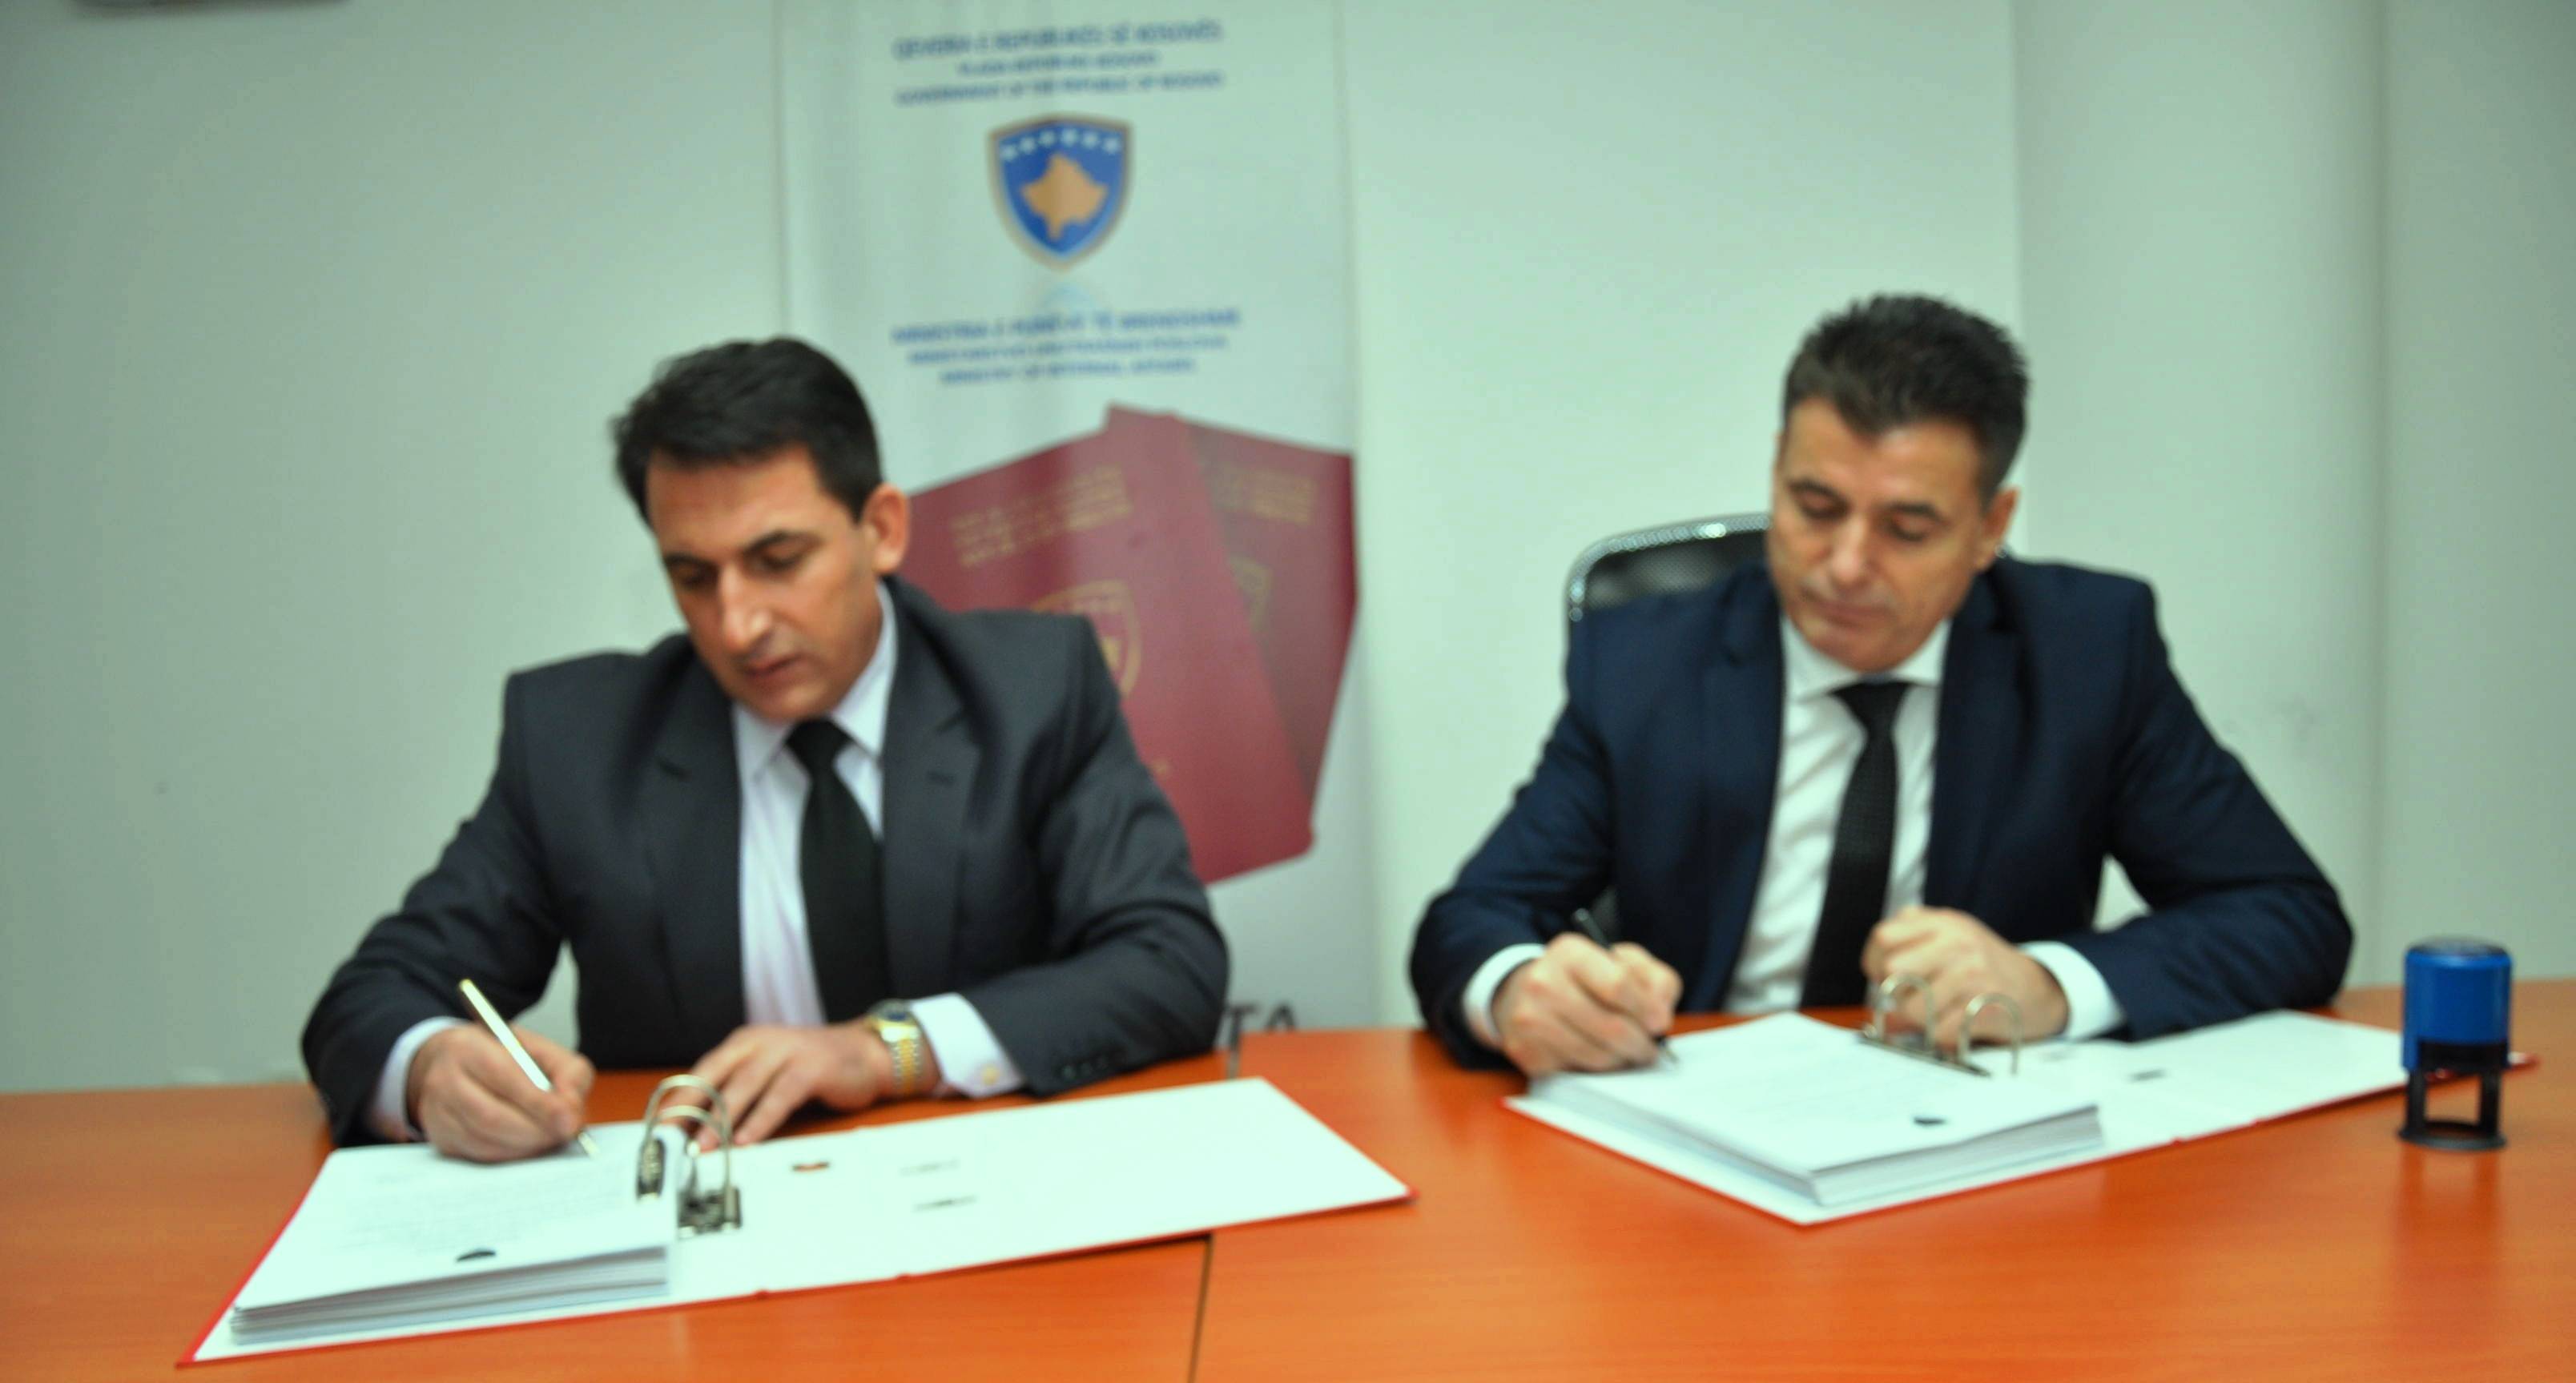 Komunës së Mitrovicës  i dorëzohen librat e certifikuar të gjendjes civile